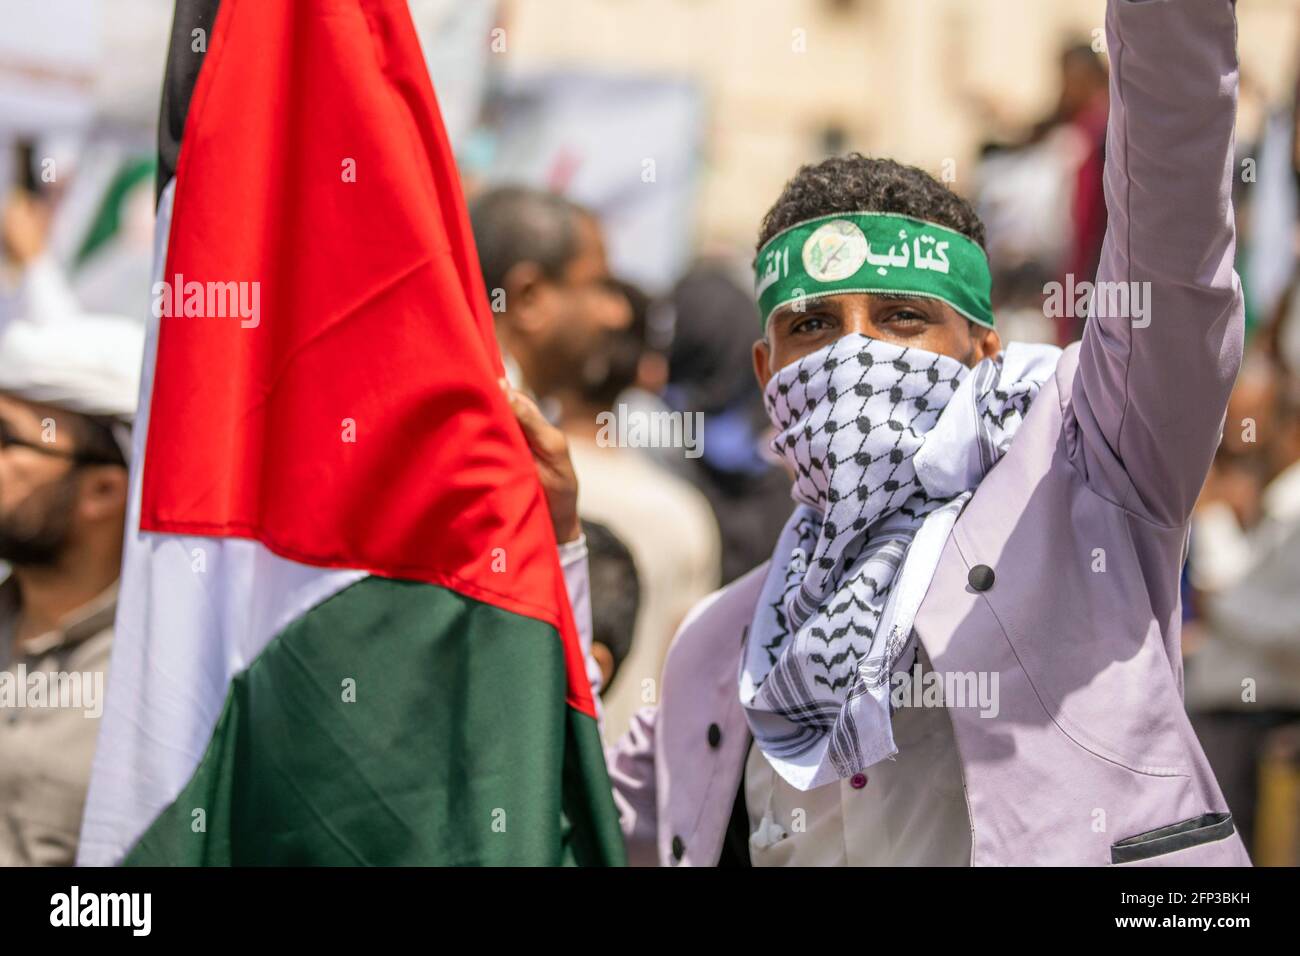 Taiz. Mai 2021. Ein Mann hält am 19. Mai 2021 in Taiz, Südjemen, eine palästinensische Flagge, wo ein Protest gegen die israelische Militäroperation im Gazastreifen stattfindet. Quelle: Str/Xinhua/Alamy Live News Stockfoto